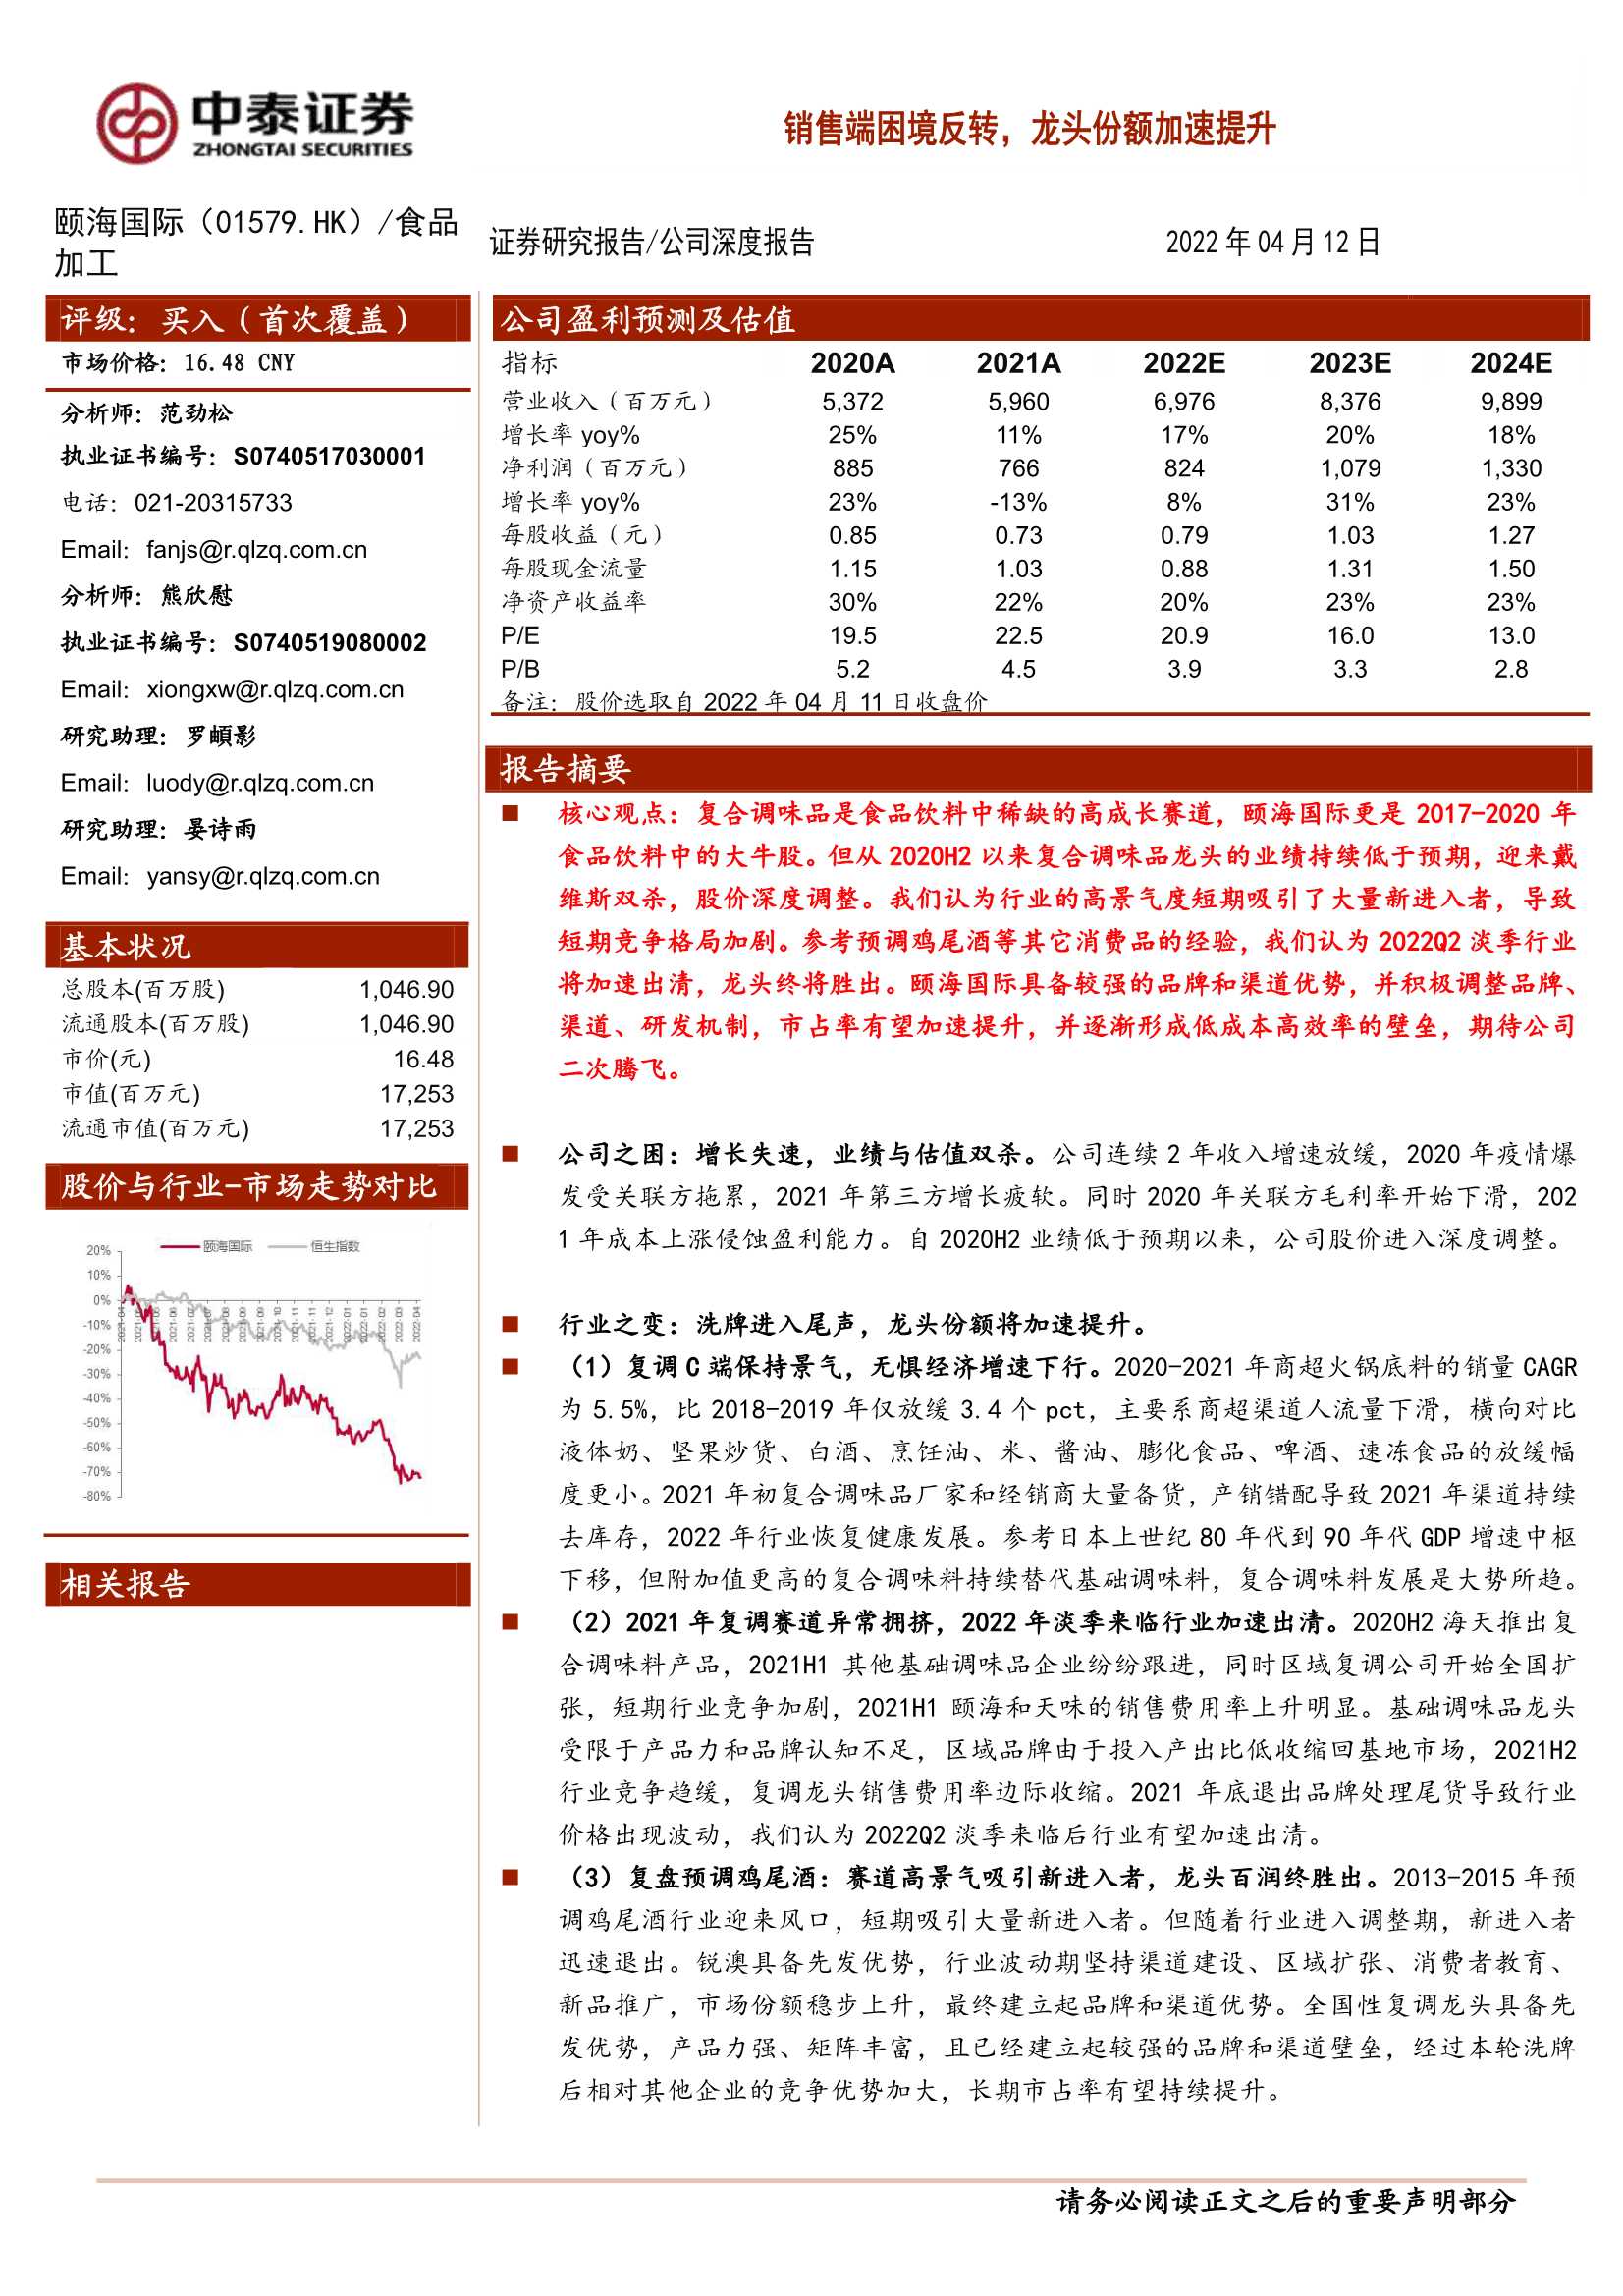 颐海国际-1579.HK-公司深度报告：销售端困境反转，龙头份额加速提升-20220412-中泰证券-36页